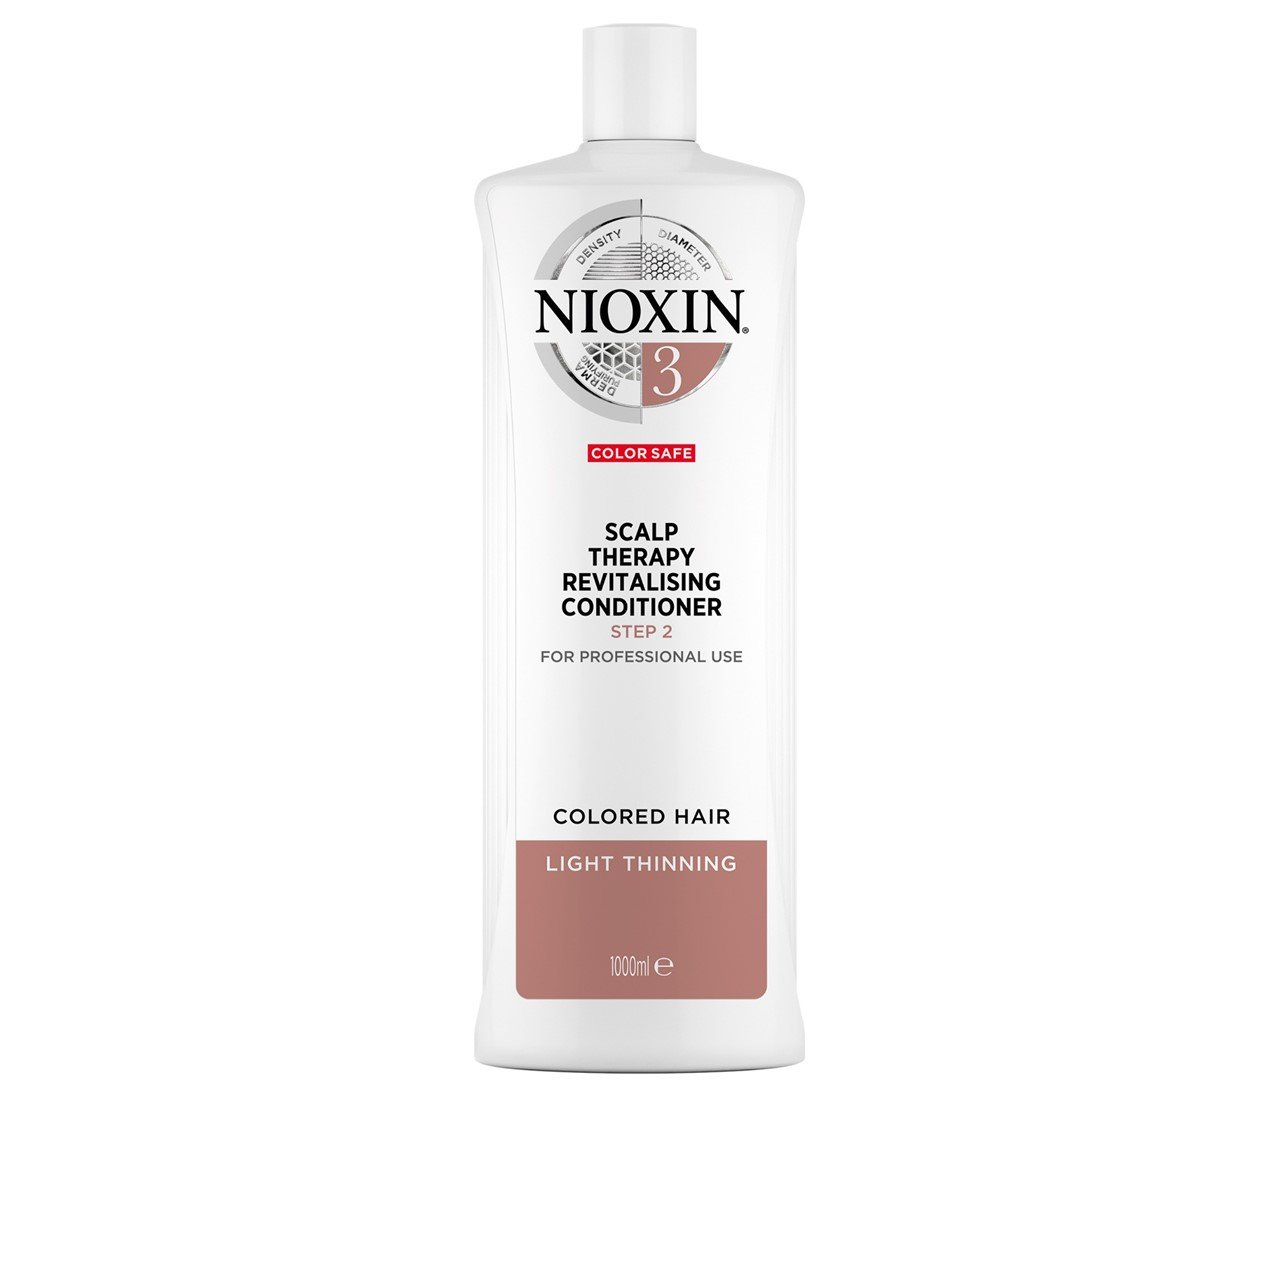 Nioxin System 3 Scalp Therapy Conditioner 1L (33.81fl oz)